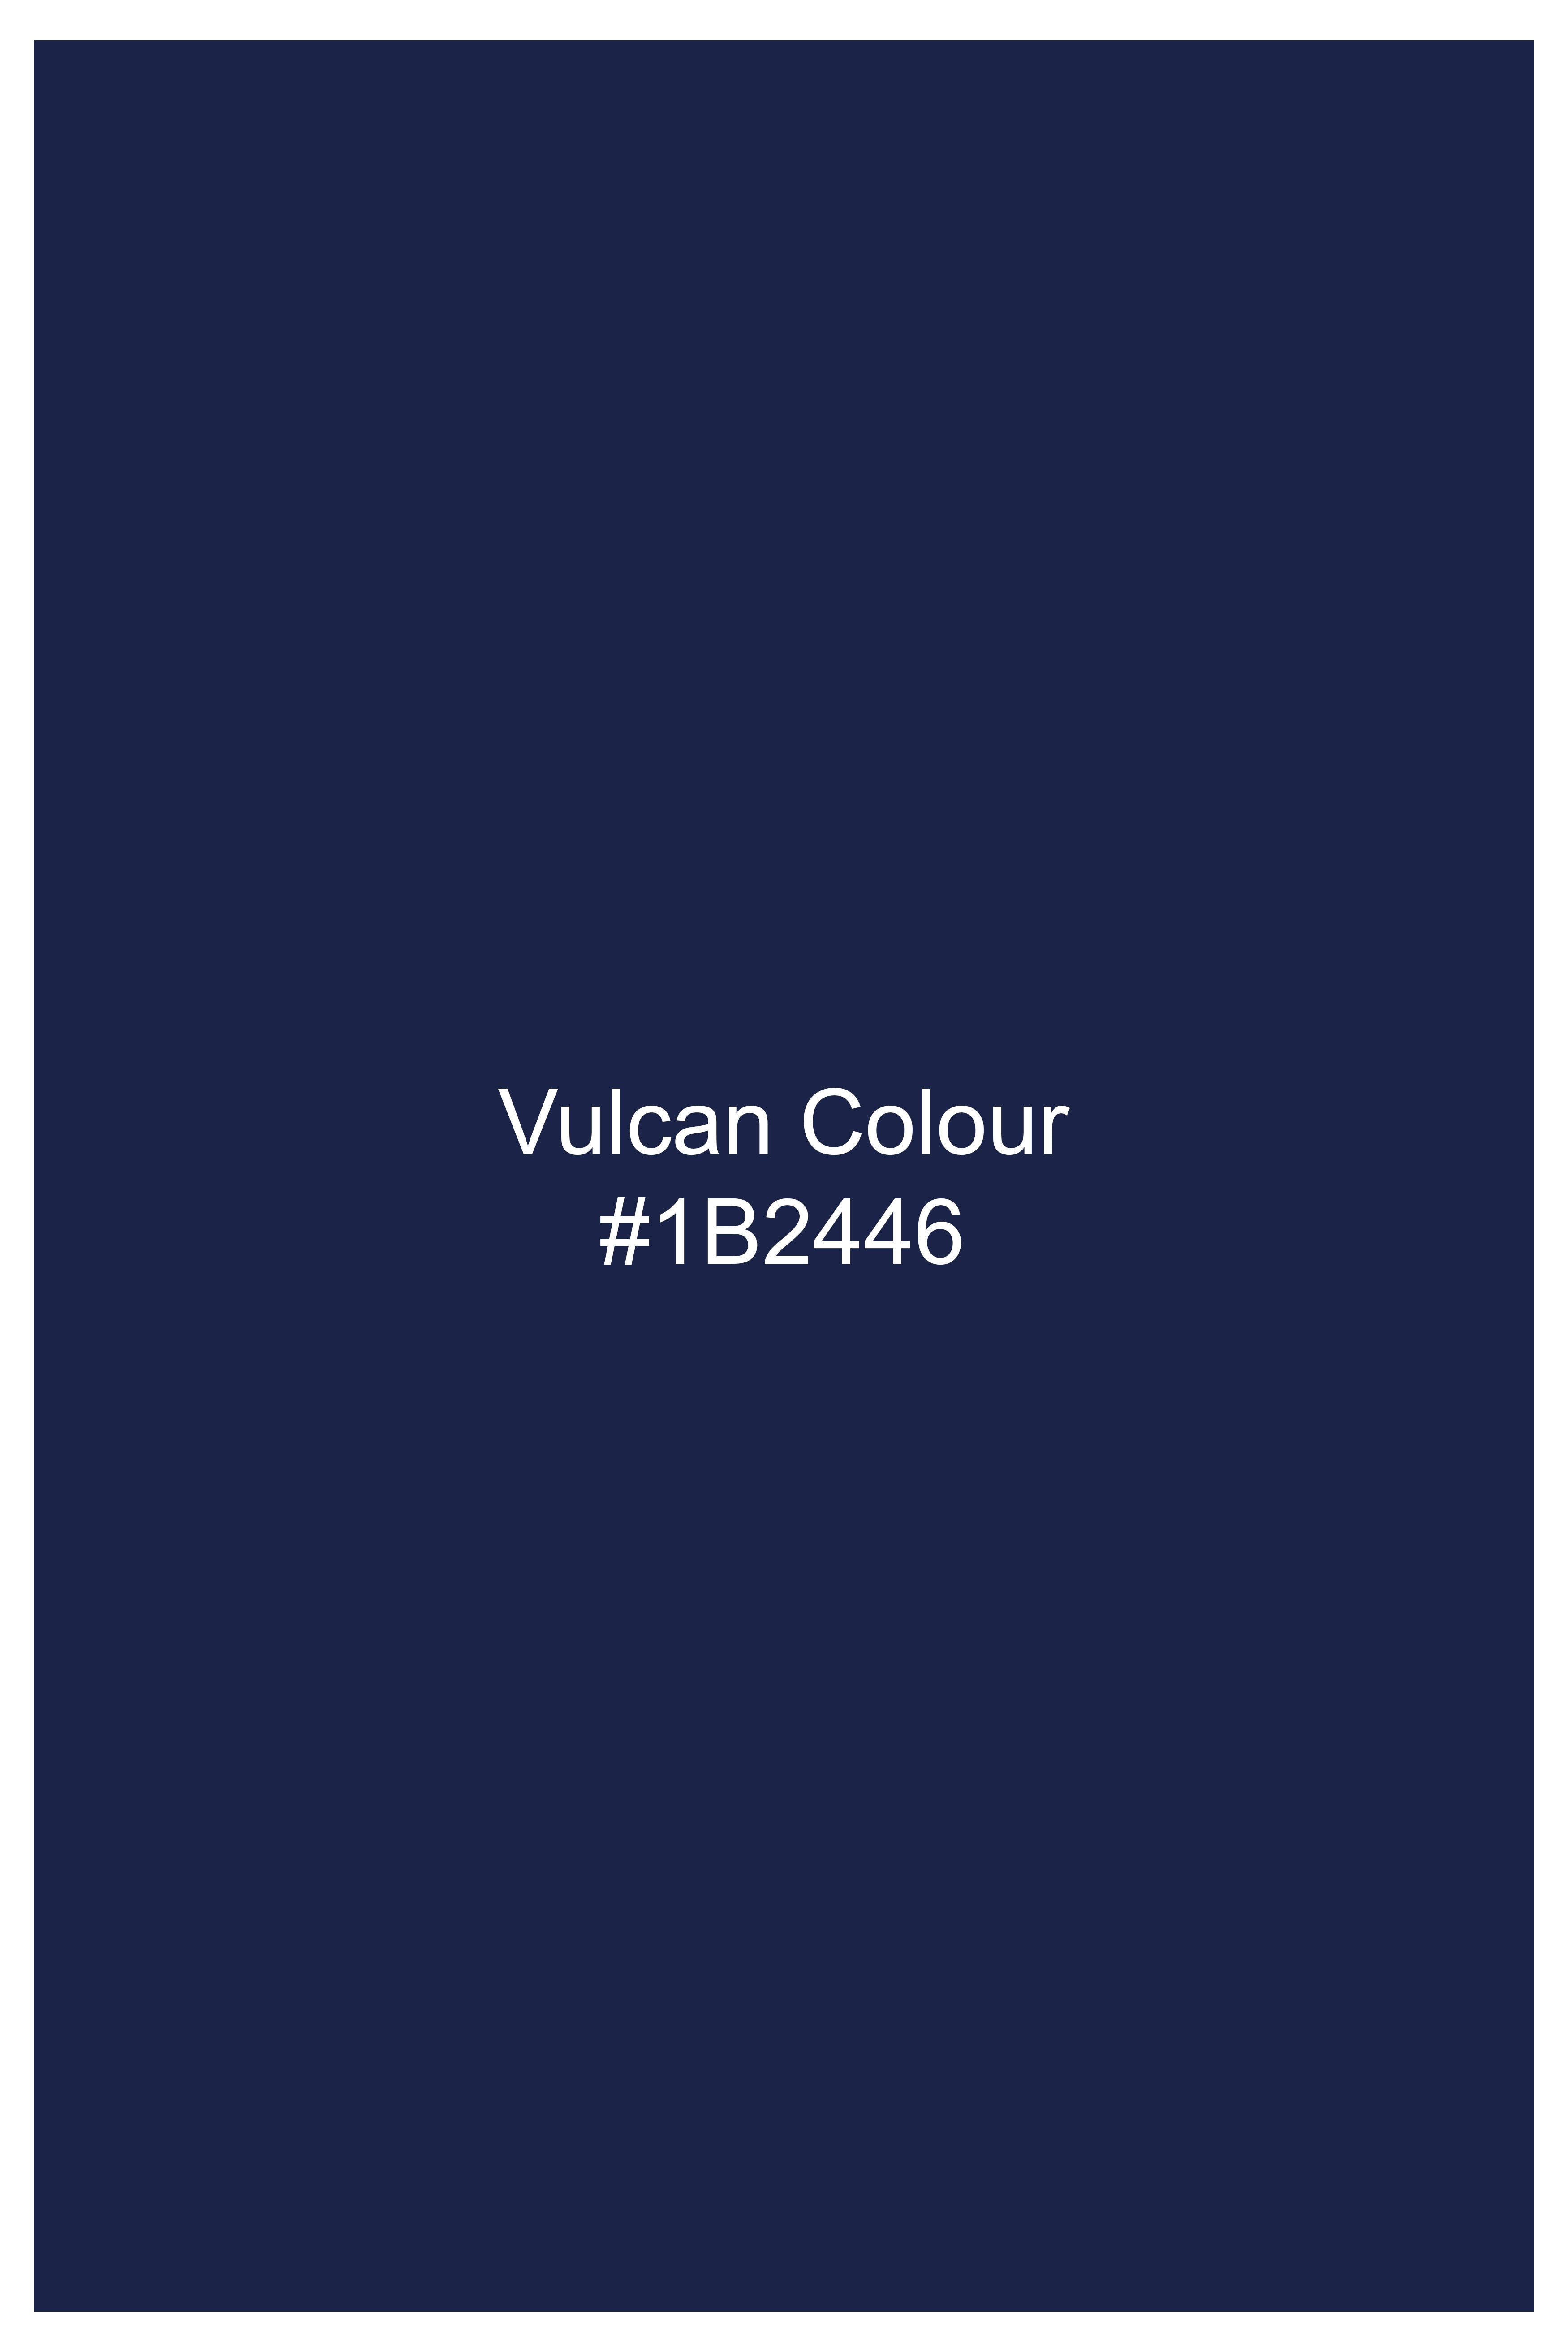 Vulcan Blue Wool Rich Designer Blazer BL2852-D328-36, BL2852-D328-38, BL2852-D328-40, BL2852-D328-42, BL2852-D328-44, BL2852-D328-46, BL2852-D328-48, BL2852-D328-50, BL2852-D328-52, BL2852-D328-54, BL2852-D328-56, BL2852-D328-58, BL2852-D328-60